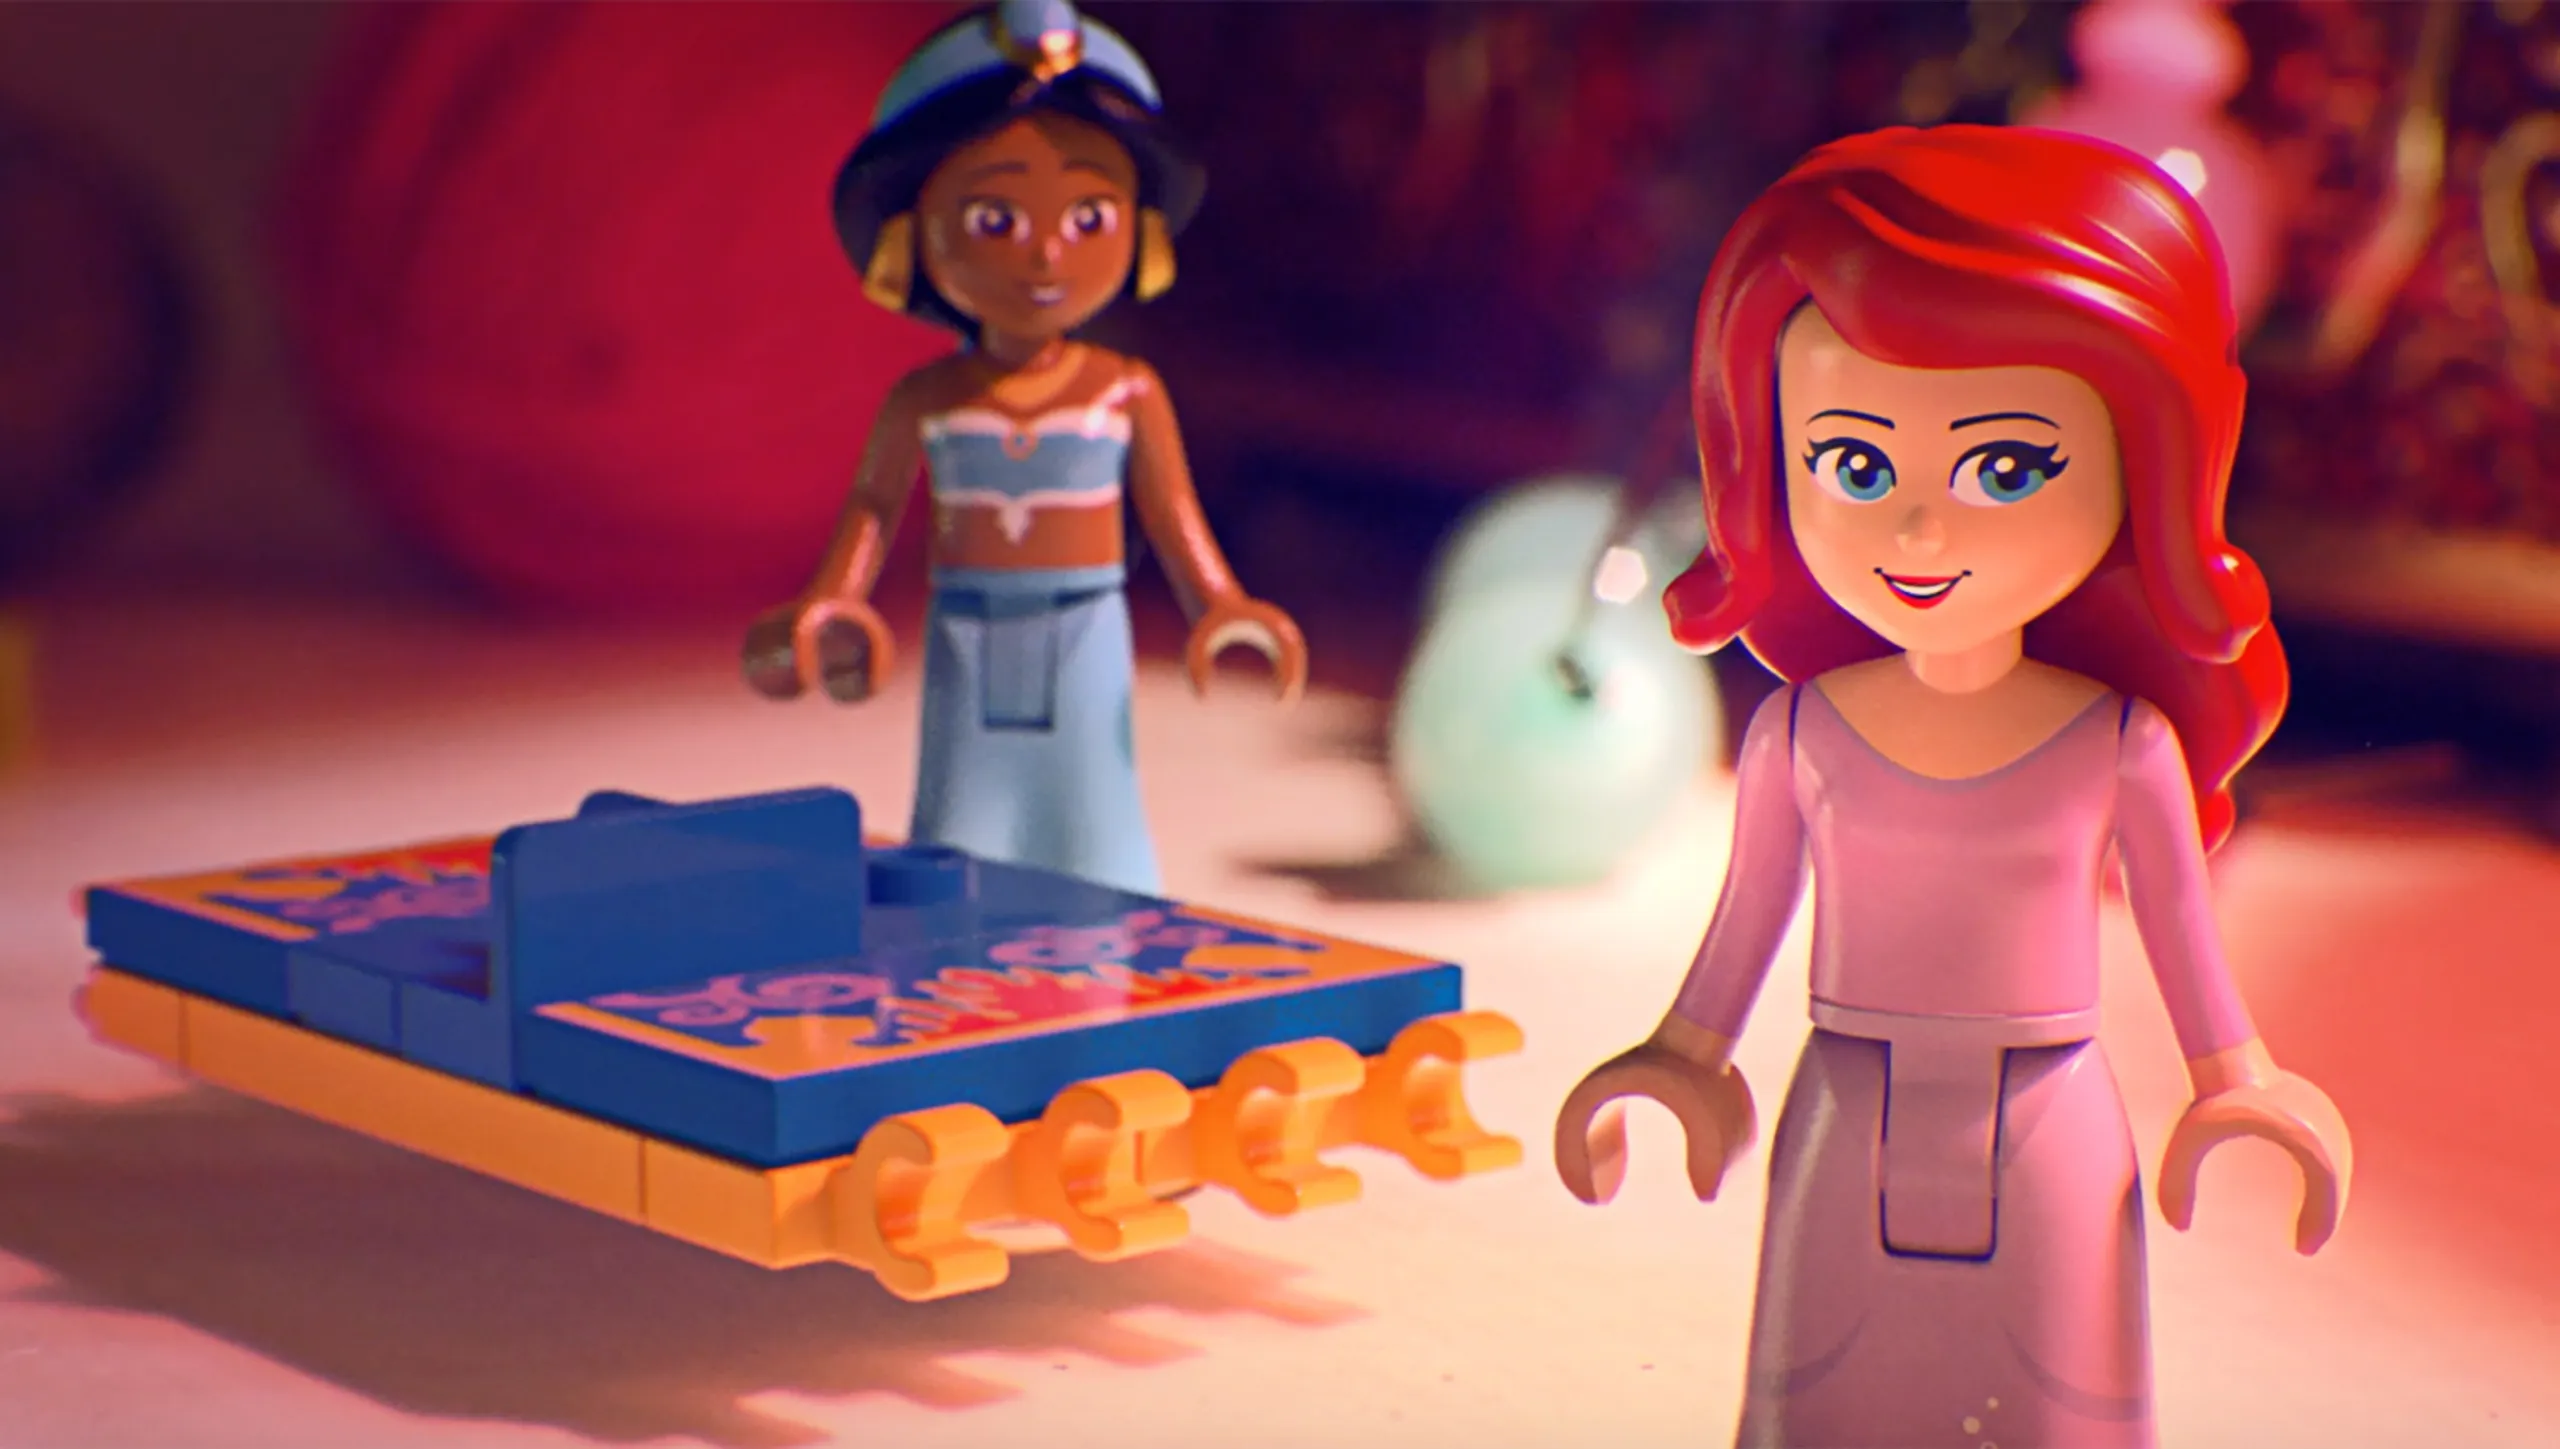 LEGO® Disney Classic: 'Up' House - Imagination Toys